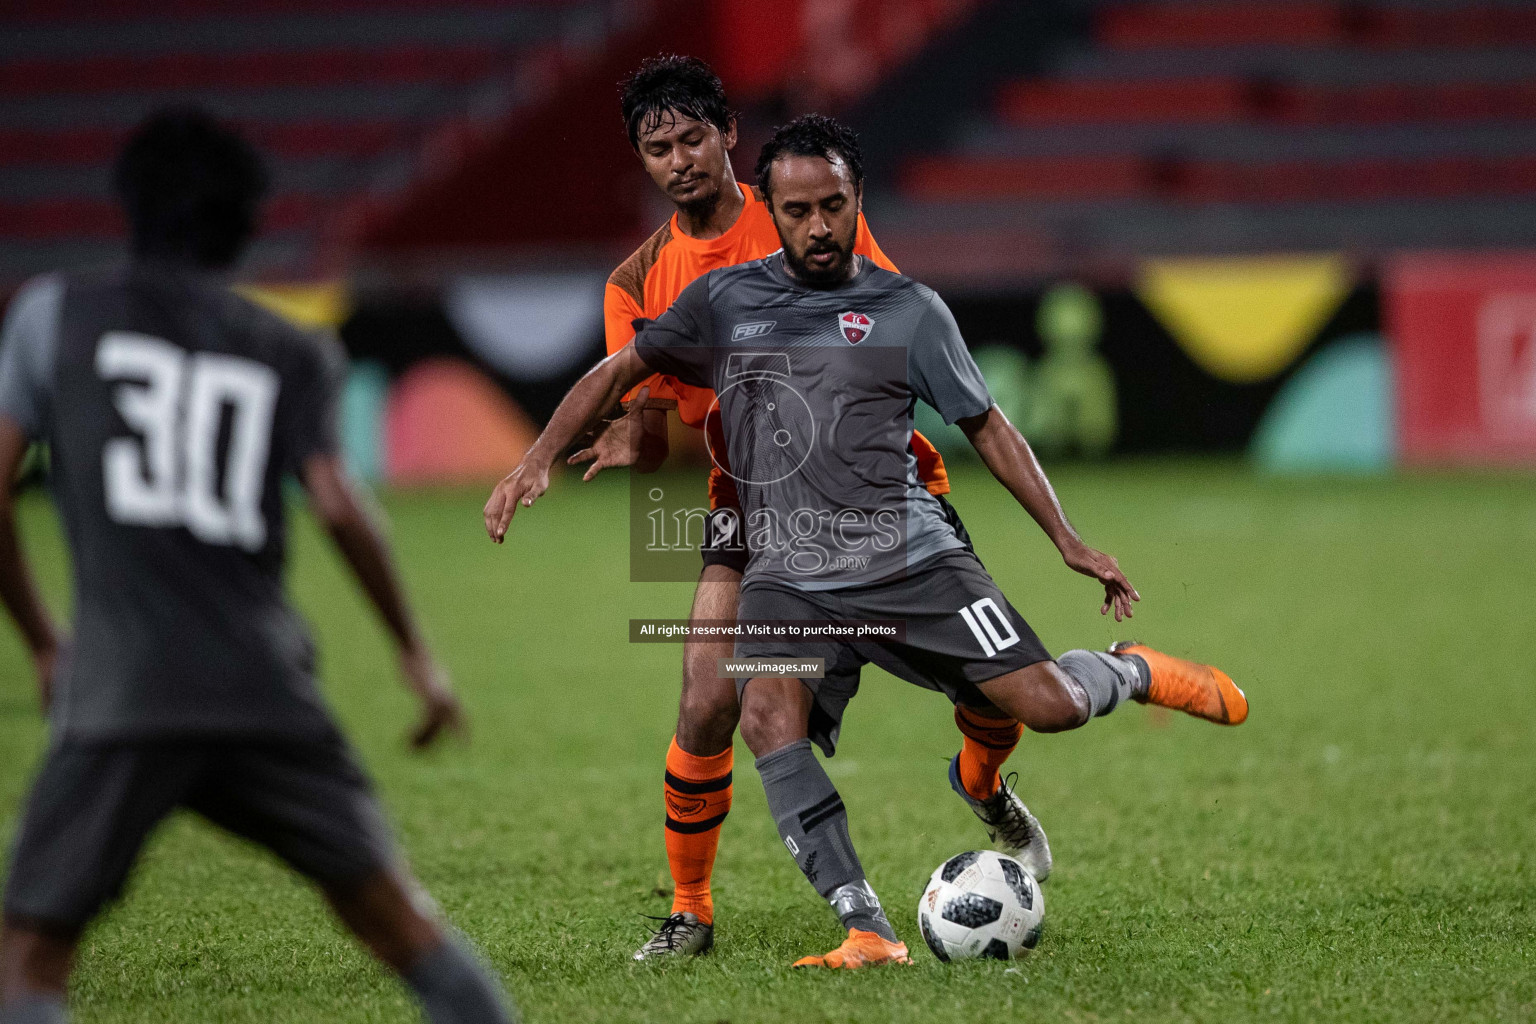 TC Sports Club vs Club Eagles in Dhiraagu Dhivehi Premier League 2019 held in Male', Maldives on 20th June 2019 Photos: Shuadh Abdul Sattar/images.mv